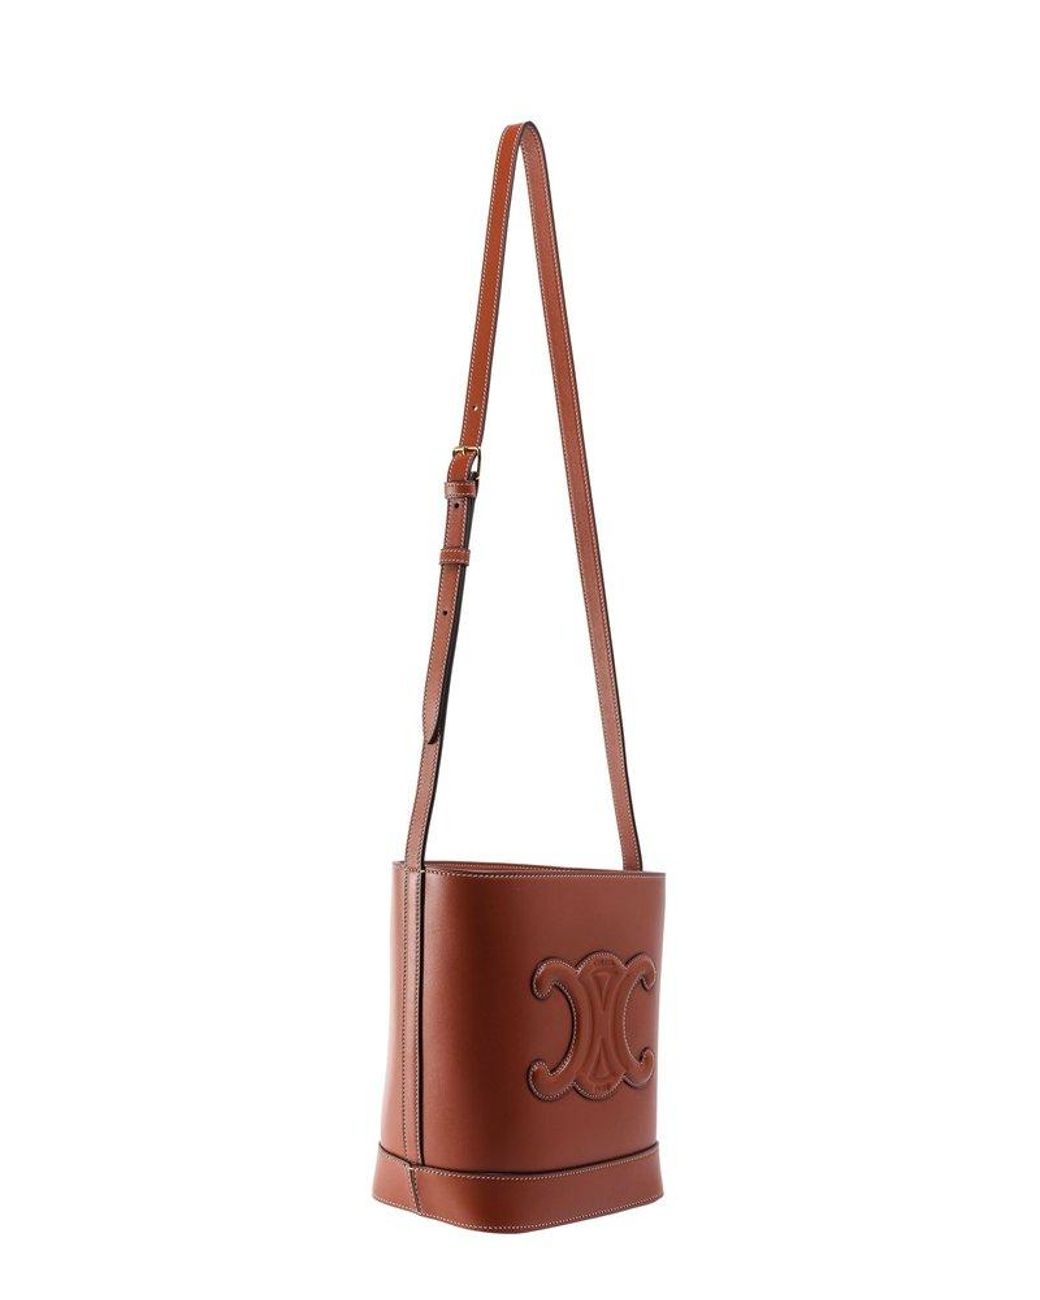 CELINE+Bucket+Shoulder+Bag+Small+Brown+Leather for sale online